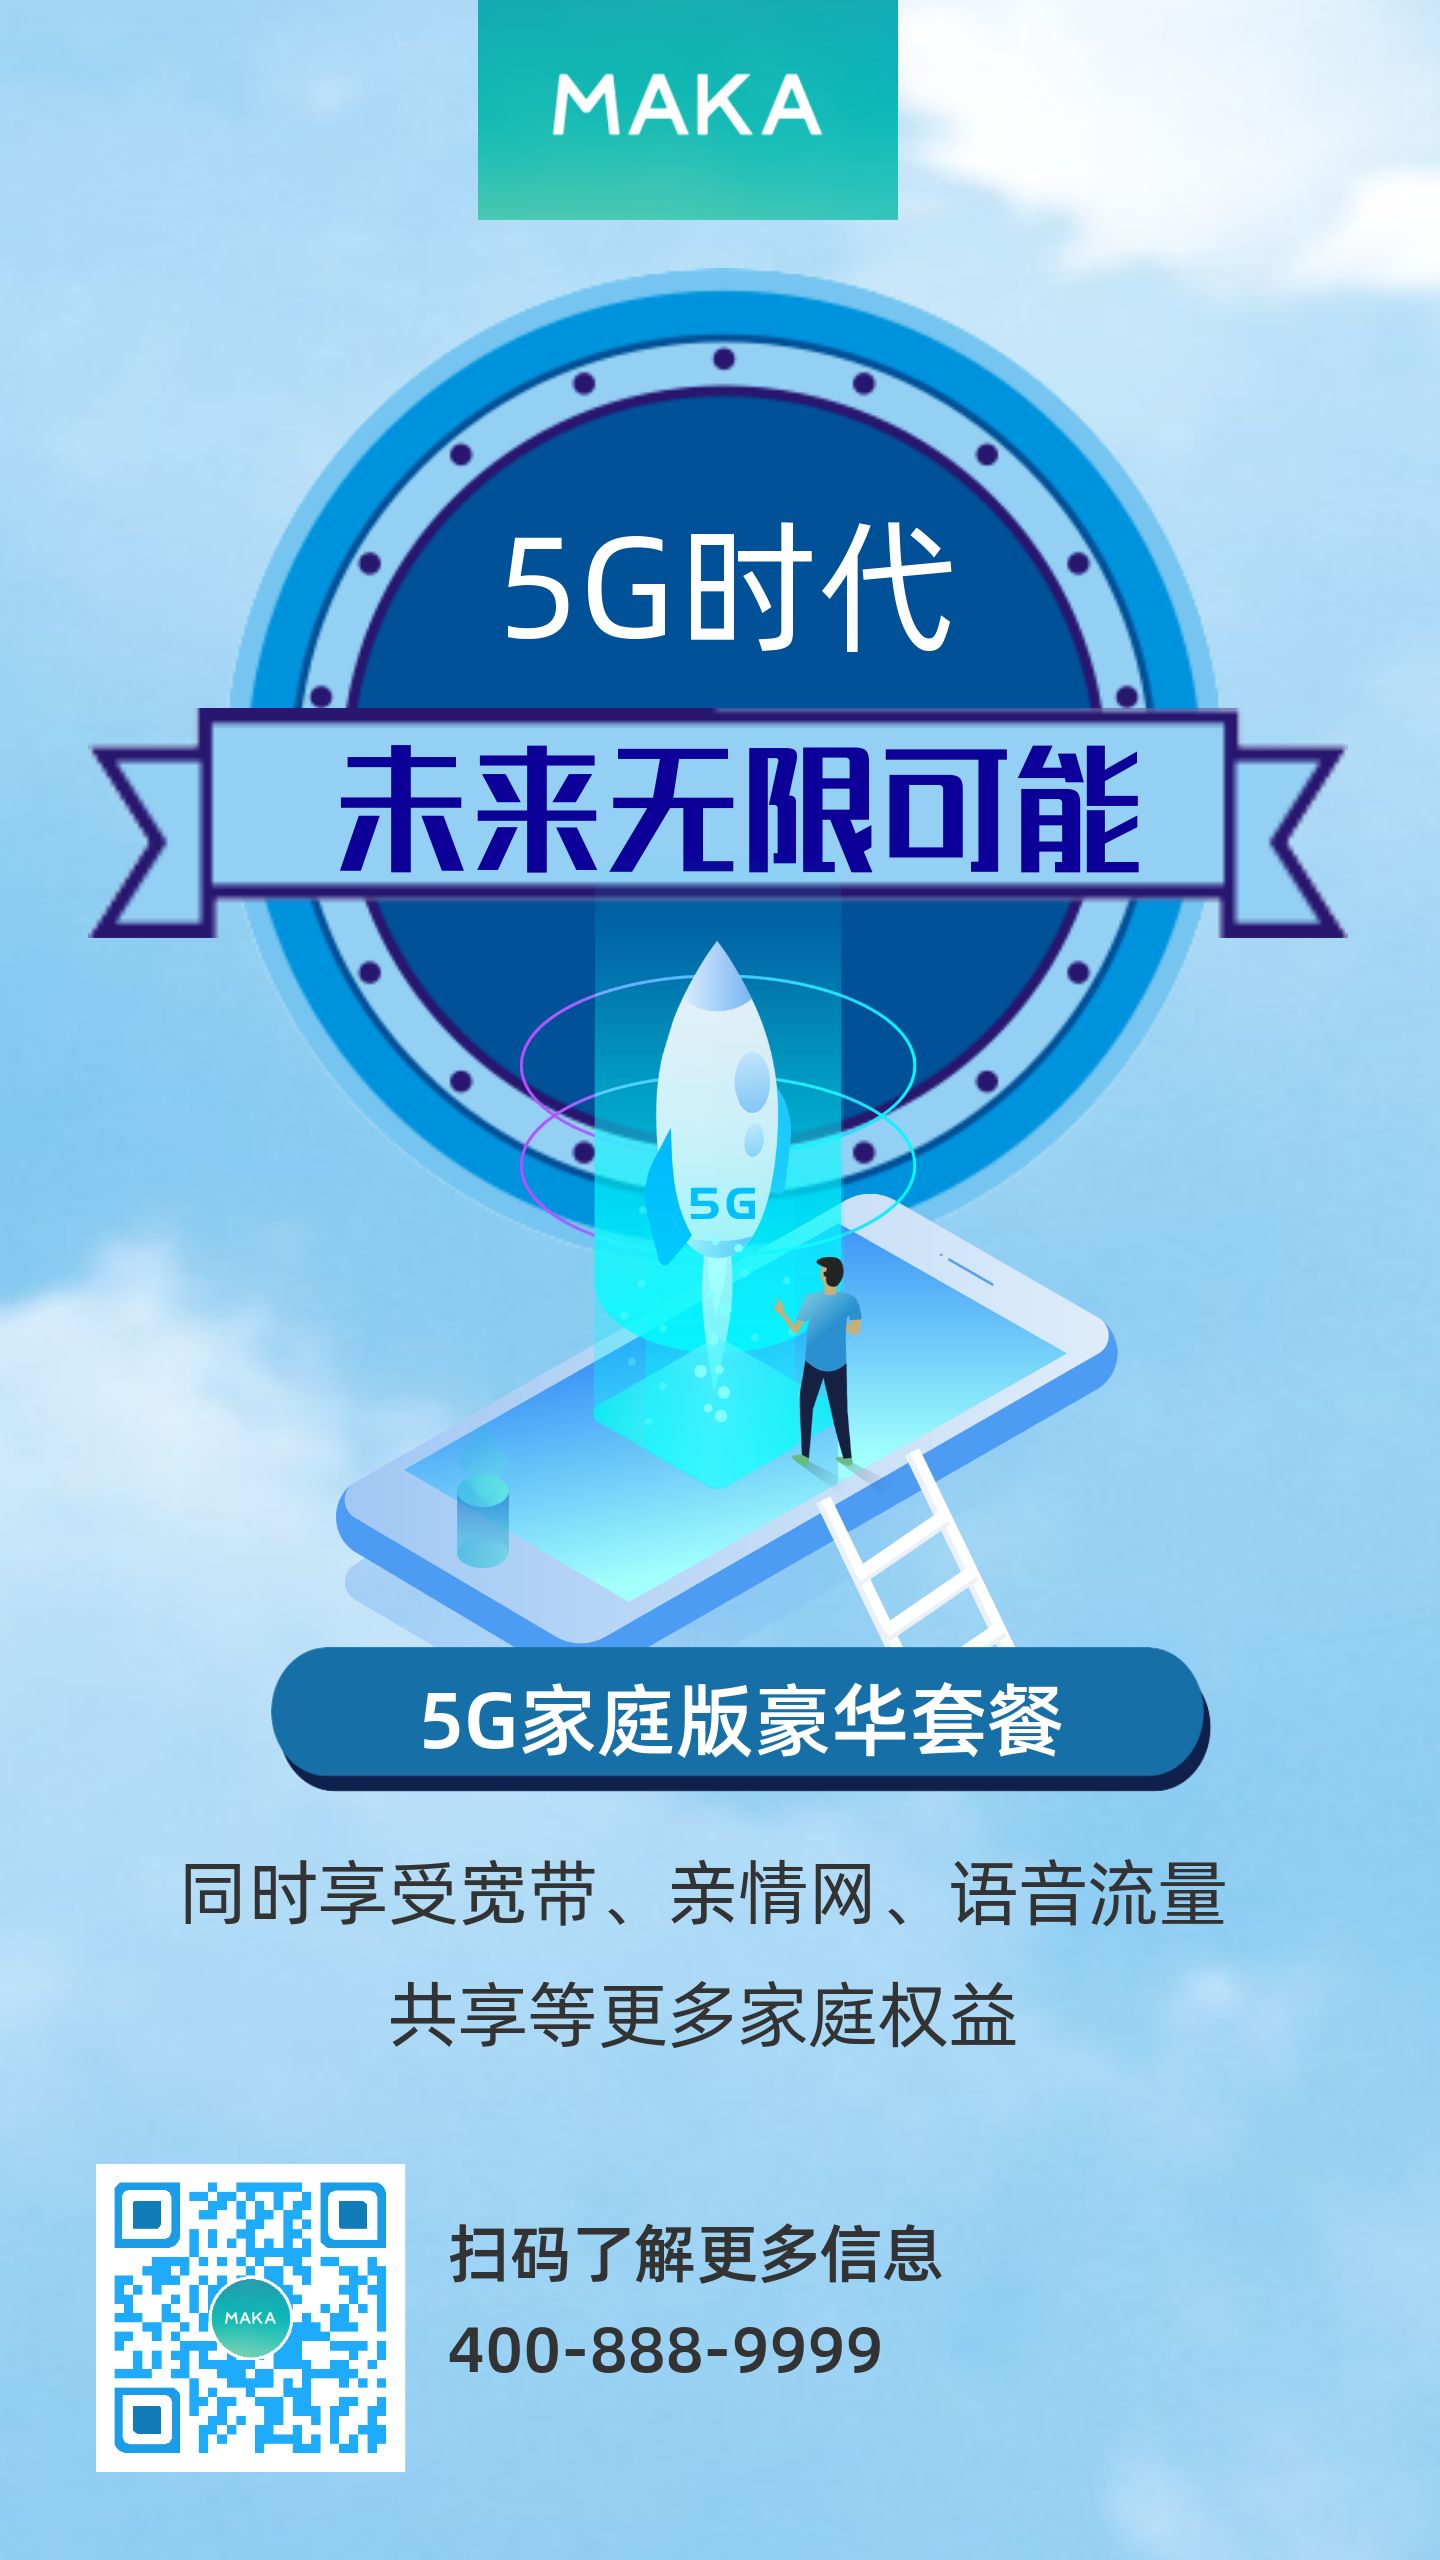 5G并非仅指电话卡：探索手机本身才是真正的5G体验  第4张